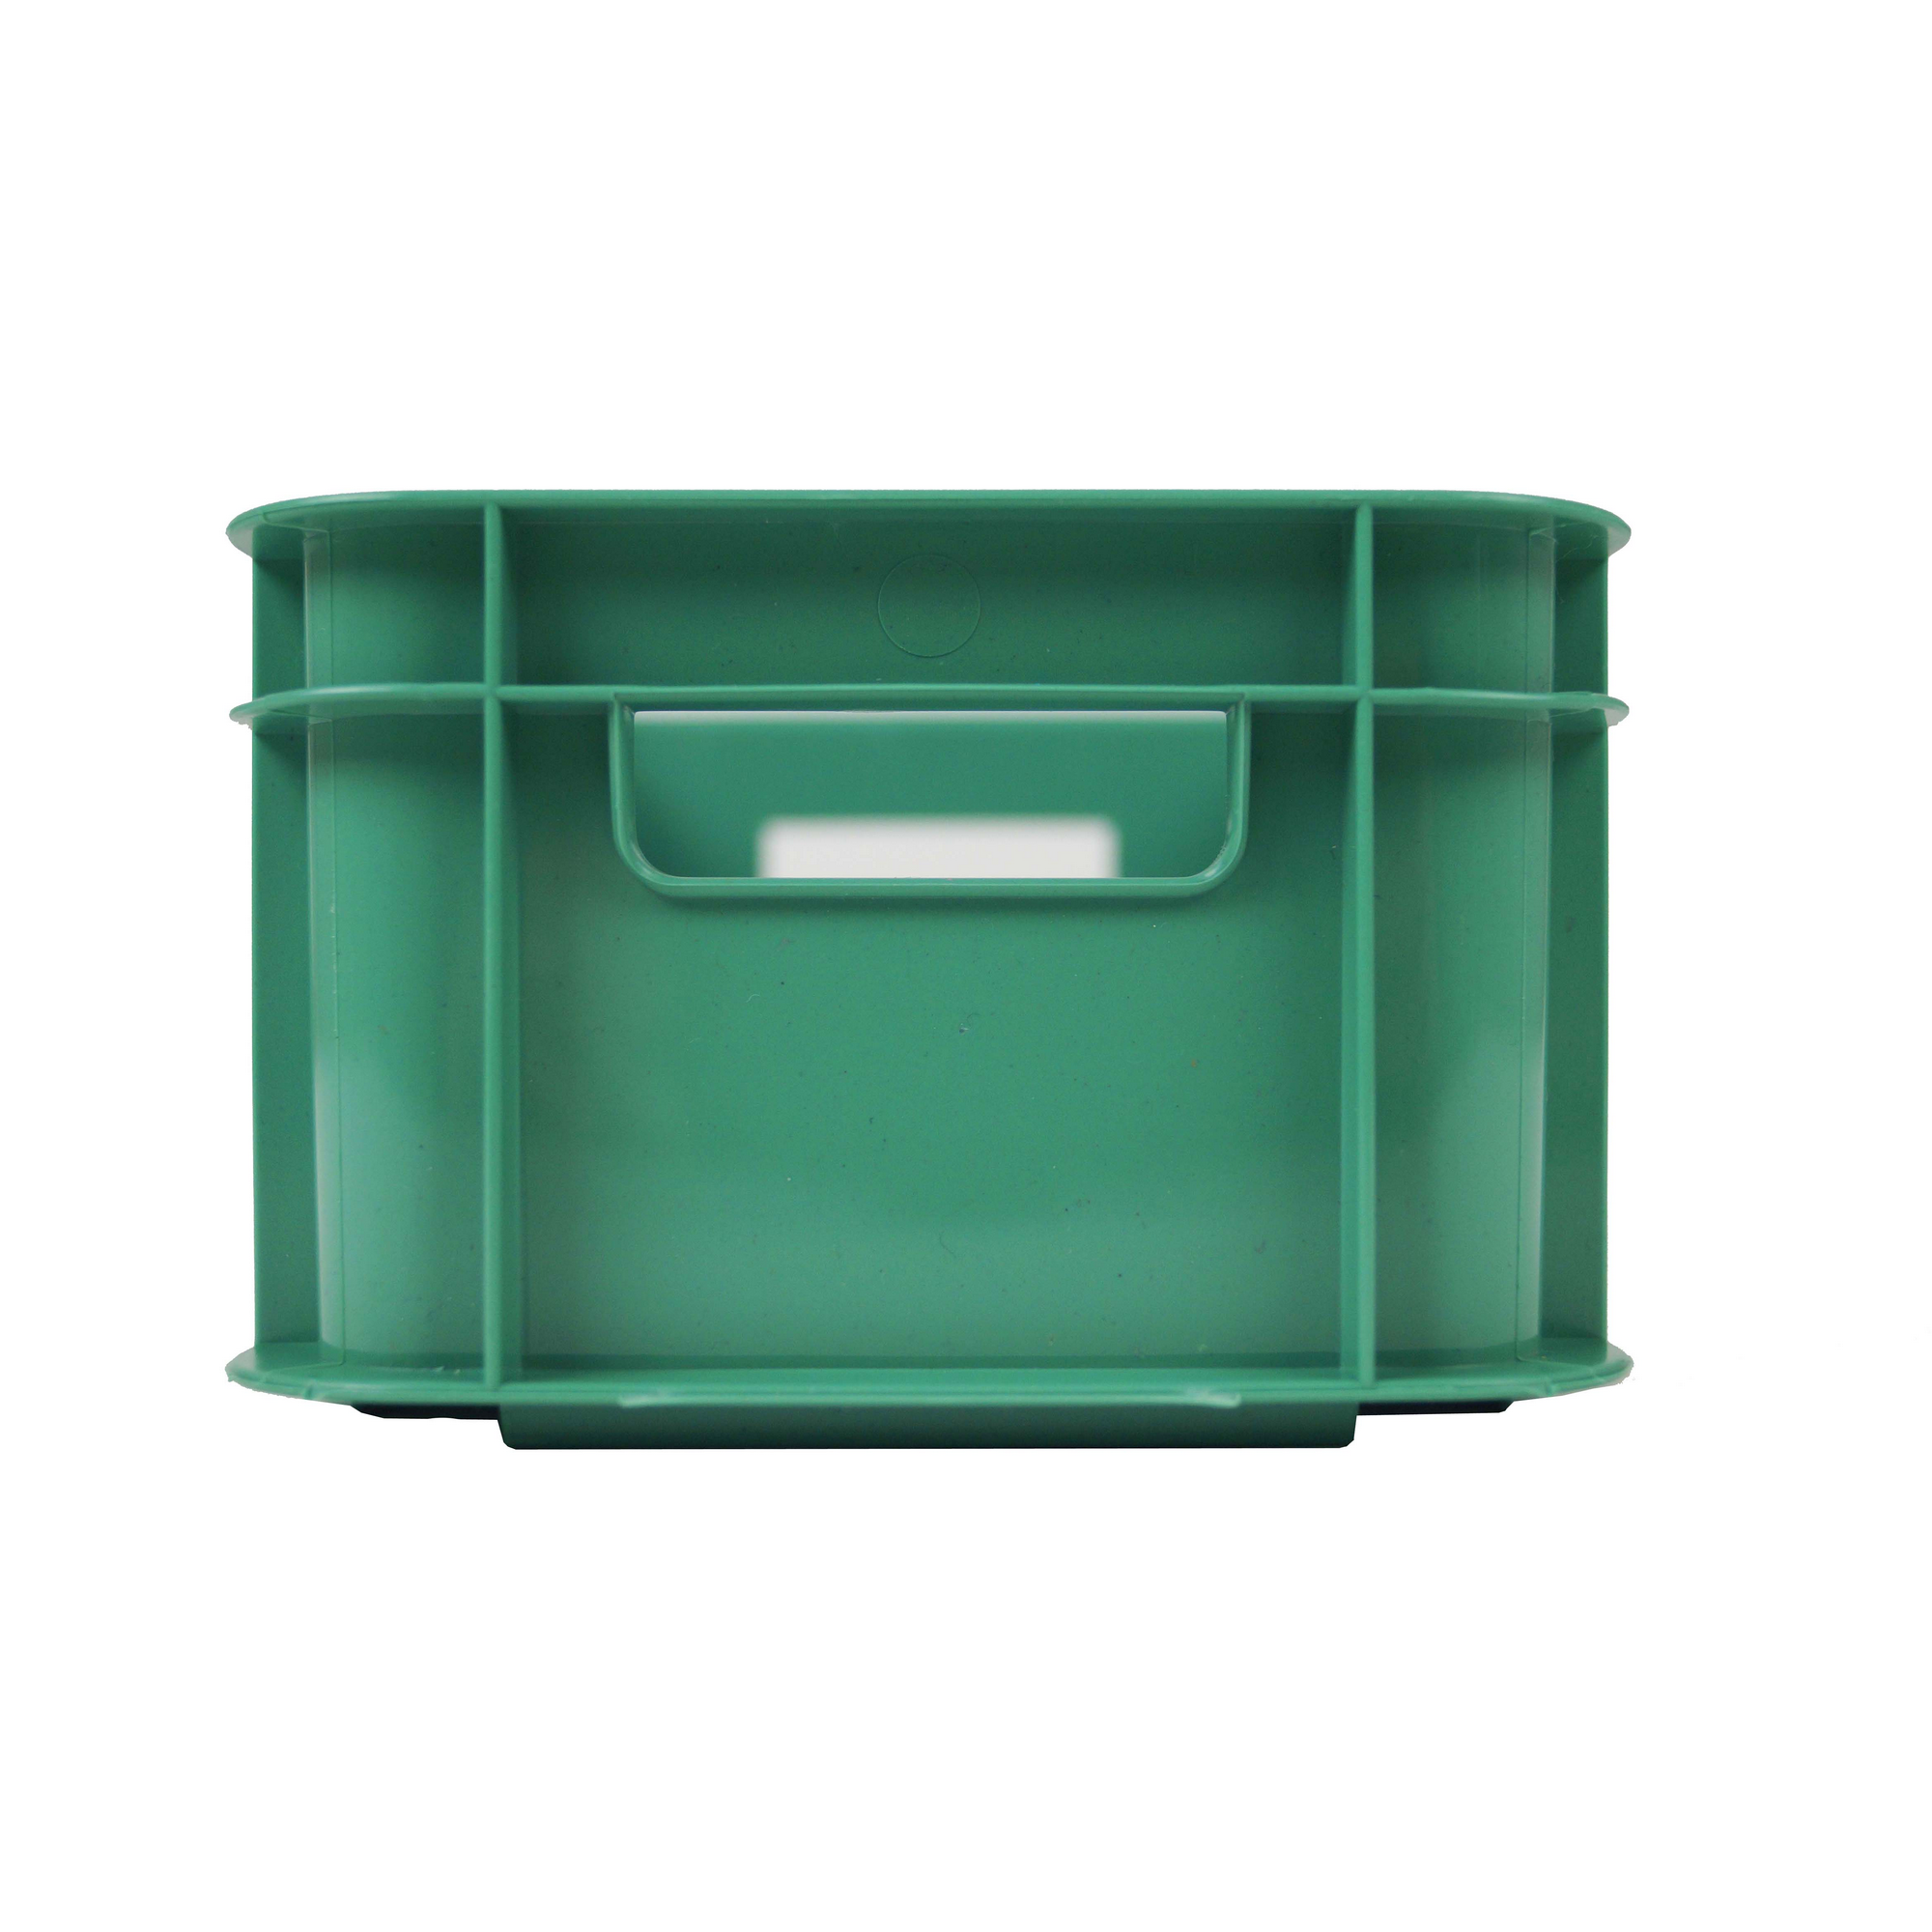 Aufbewahrungsbox 'Bambini-Box' grün 16,5 x 11,7 x 7,5 cm, 1 l + product picture